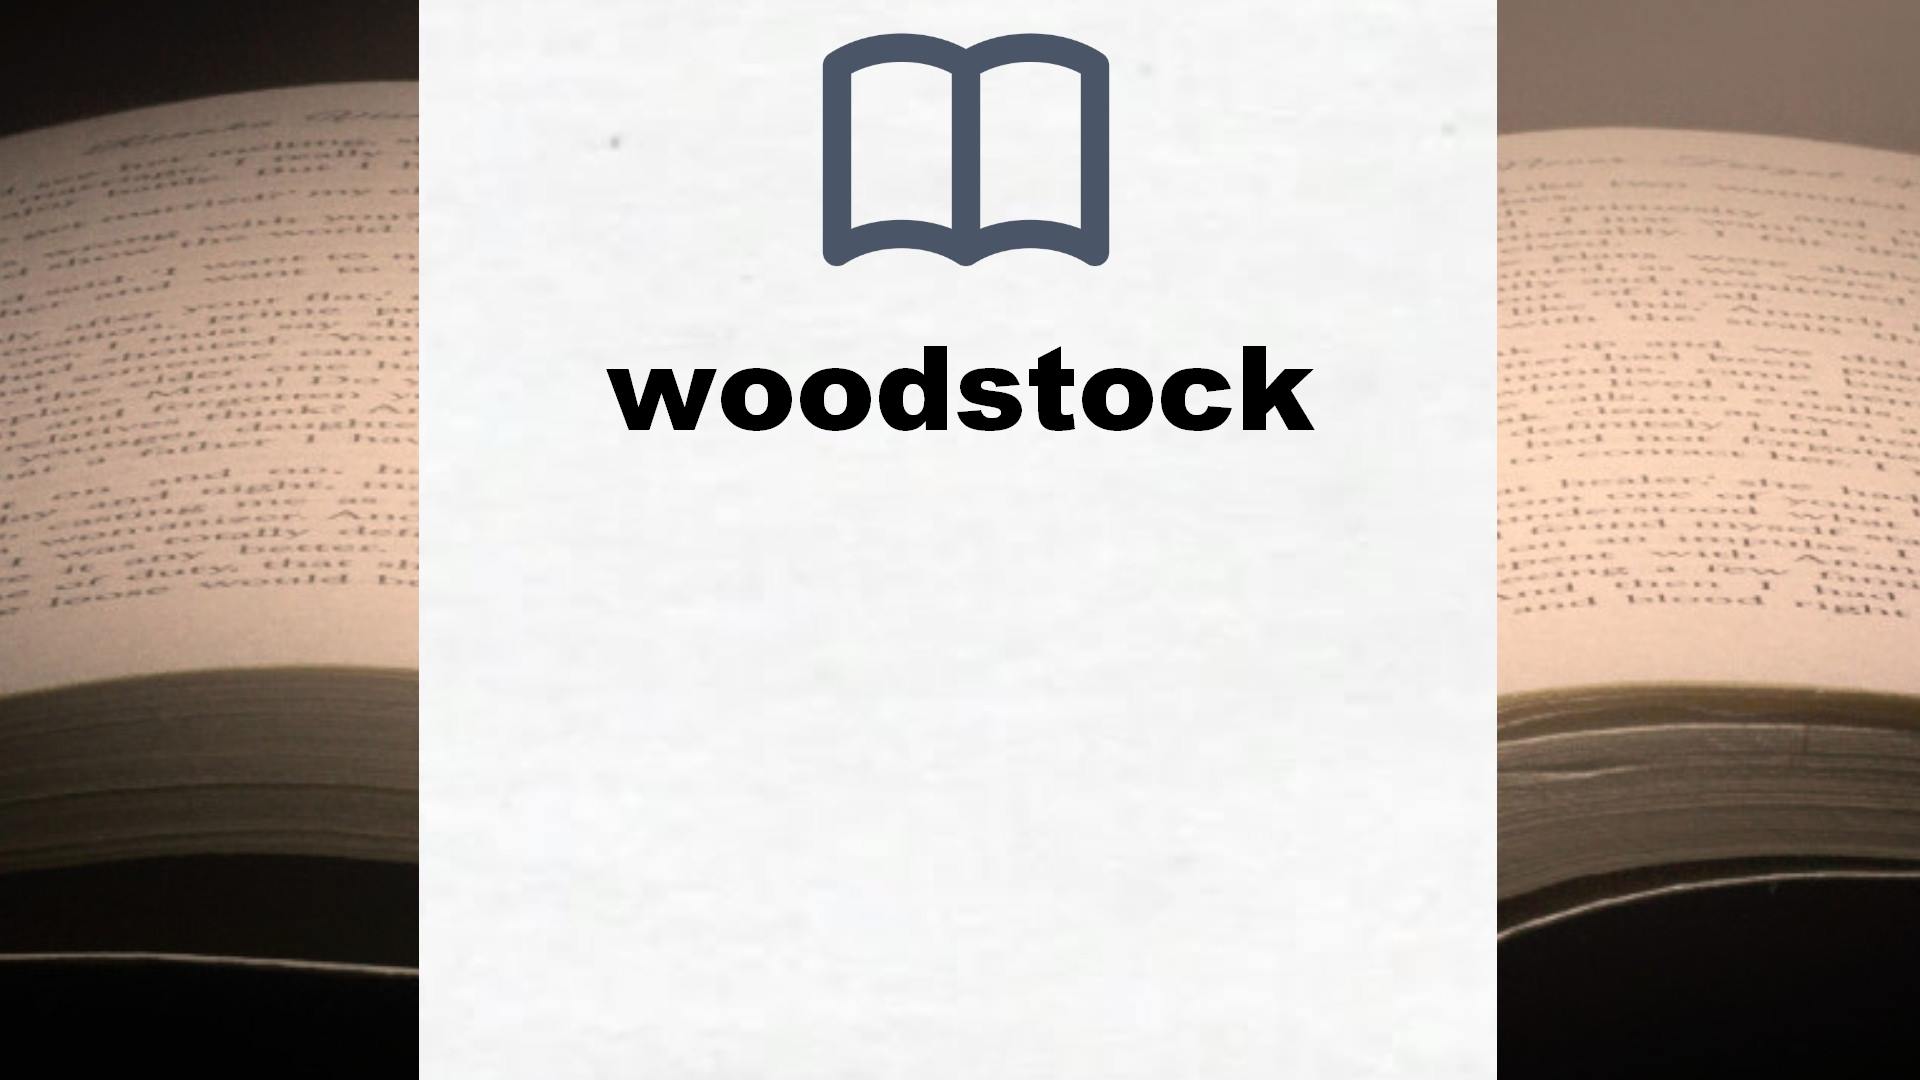 Libros sobre woodstock